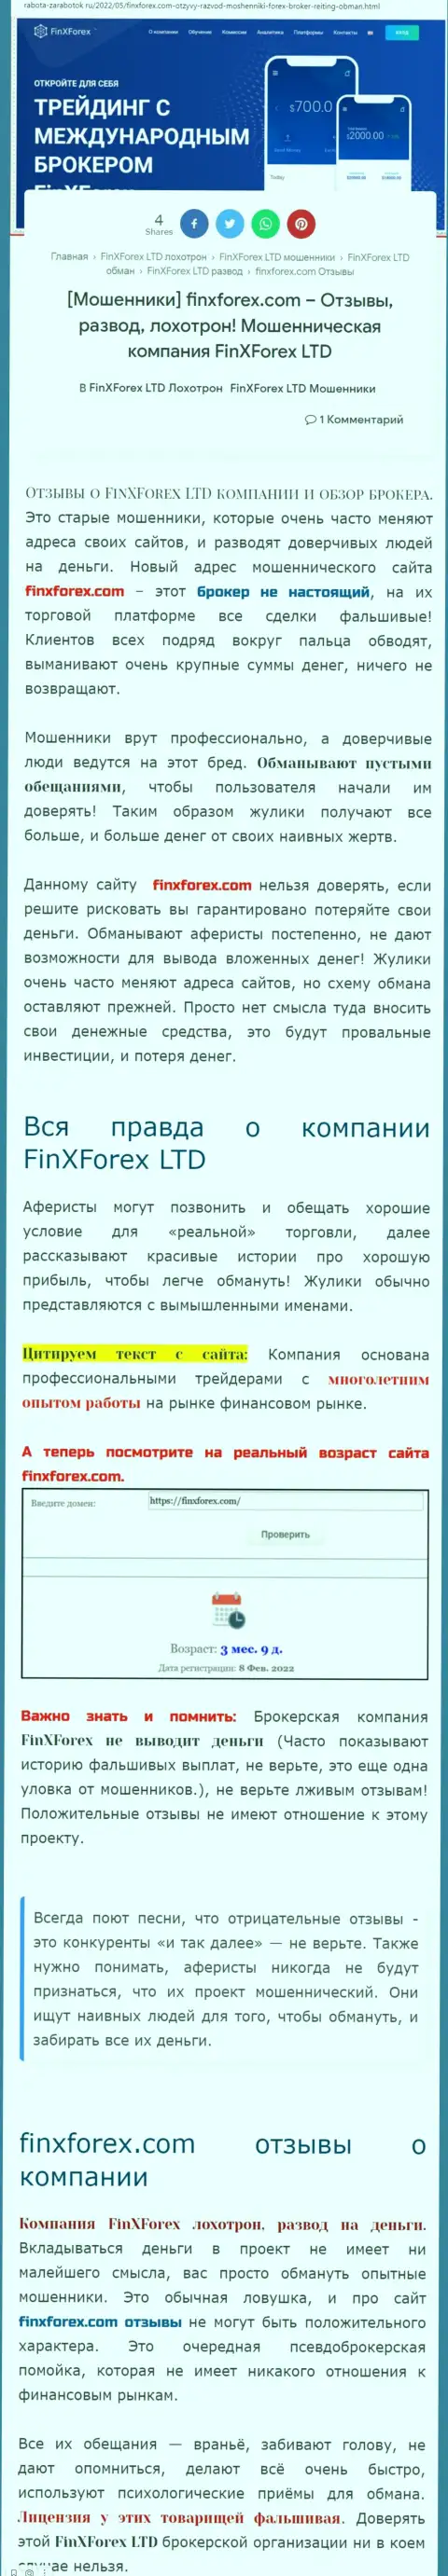 Автор обзорной публикации об FinXForex Com пишет, что в компании FinXForex лохотронят